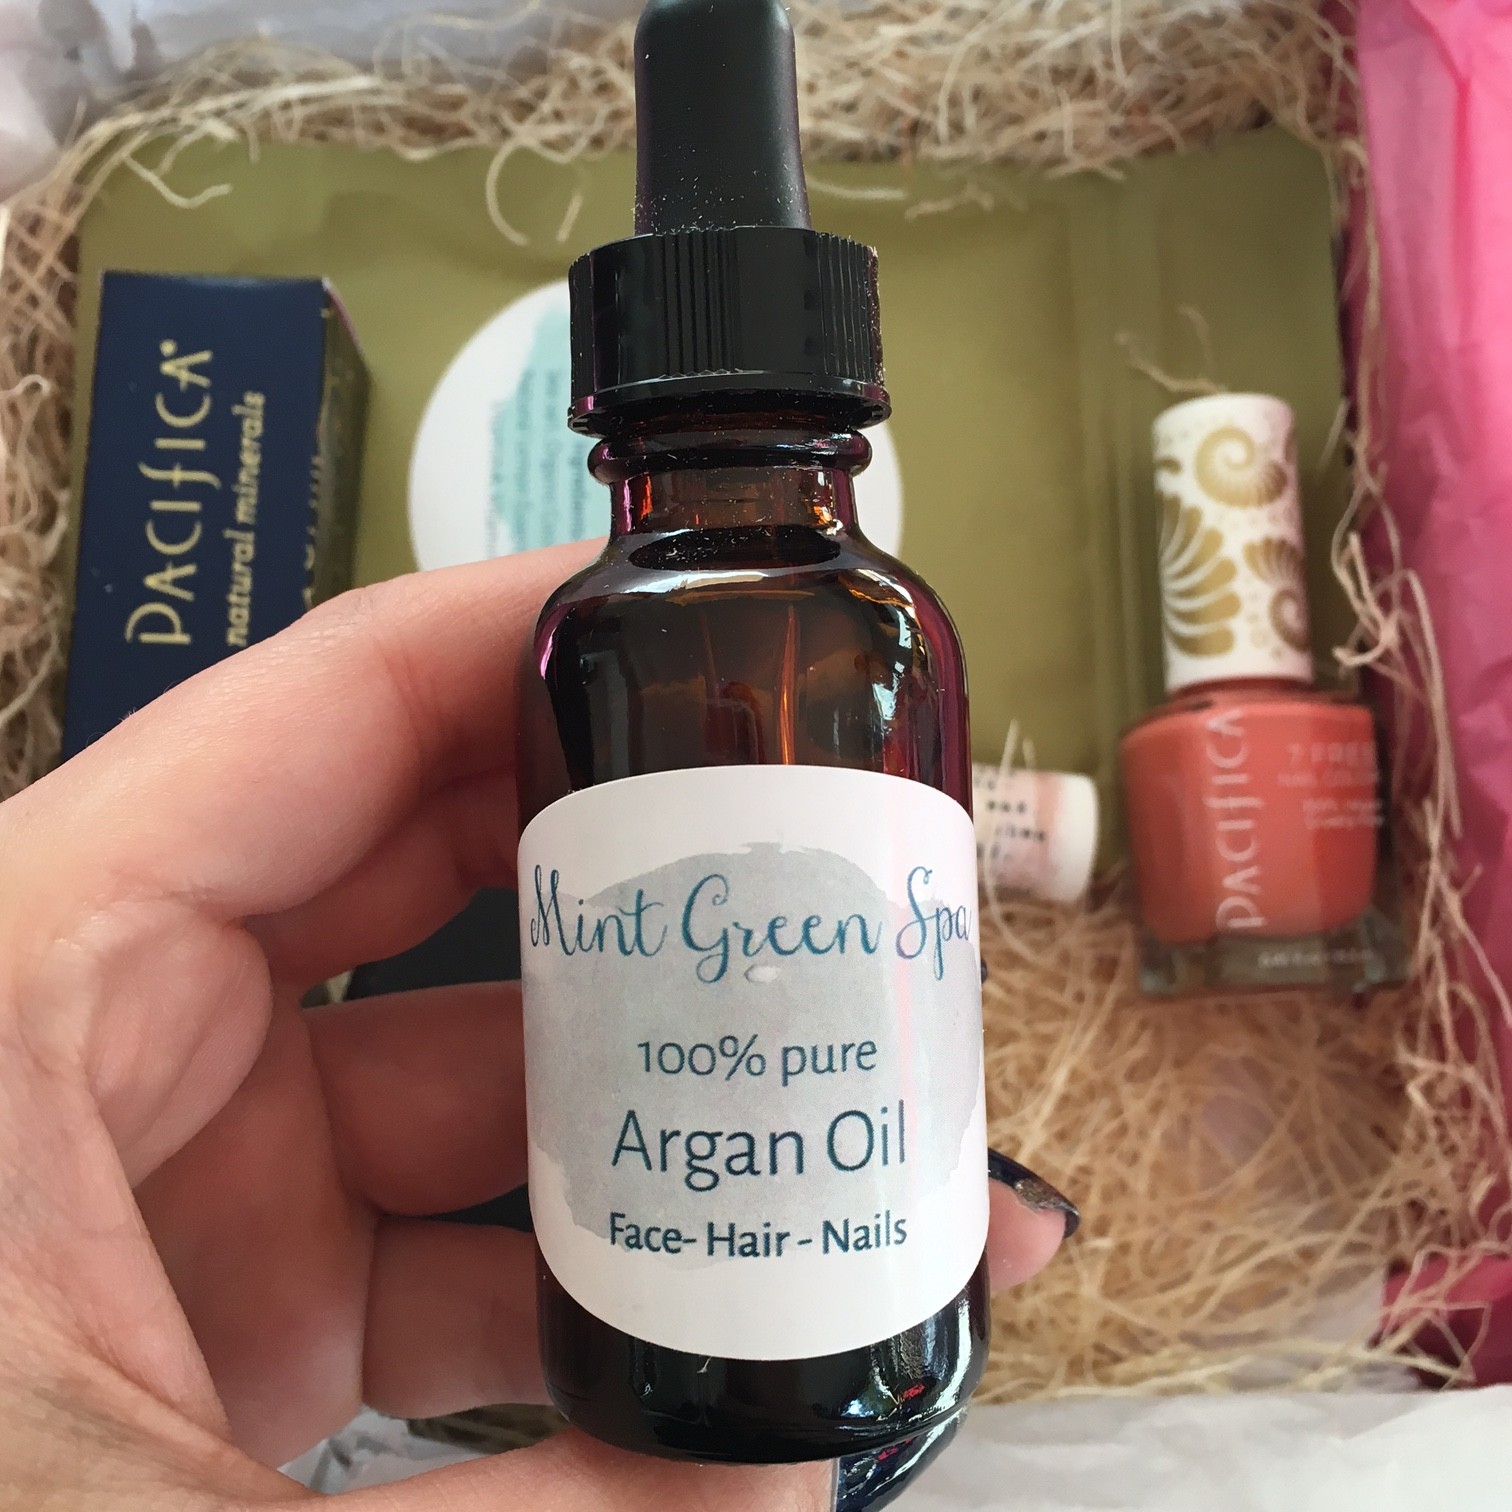 Mint Green Spa's 100% Argan Oil